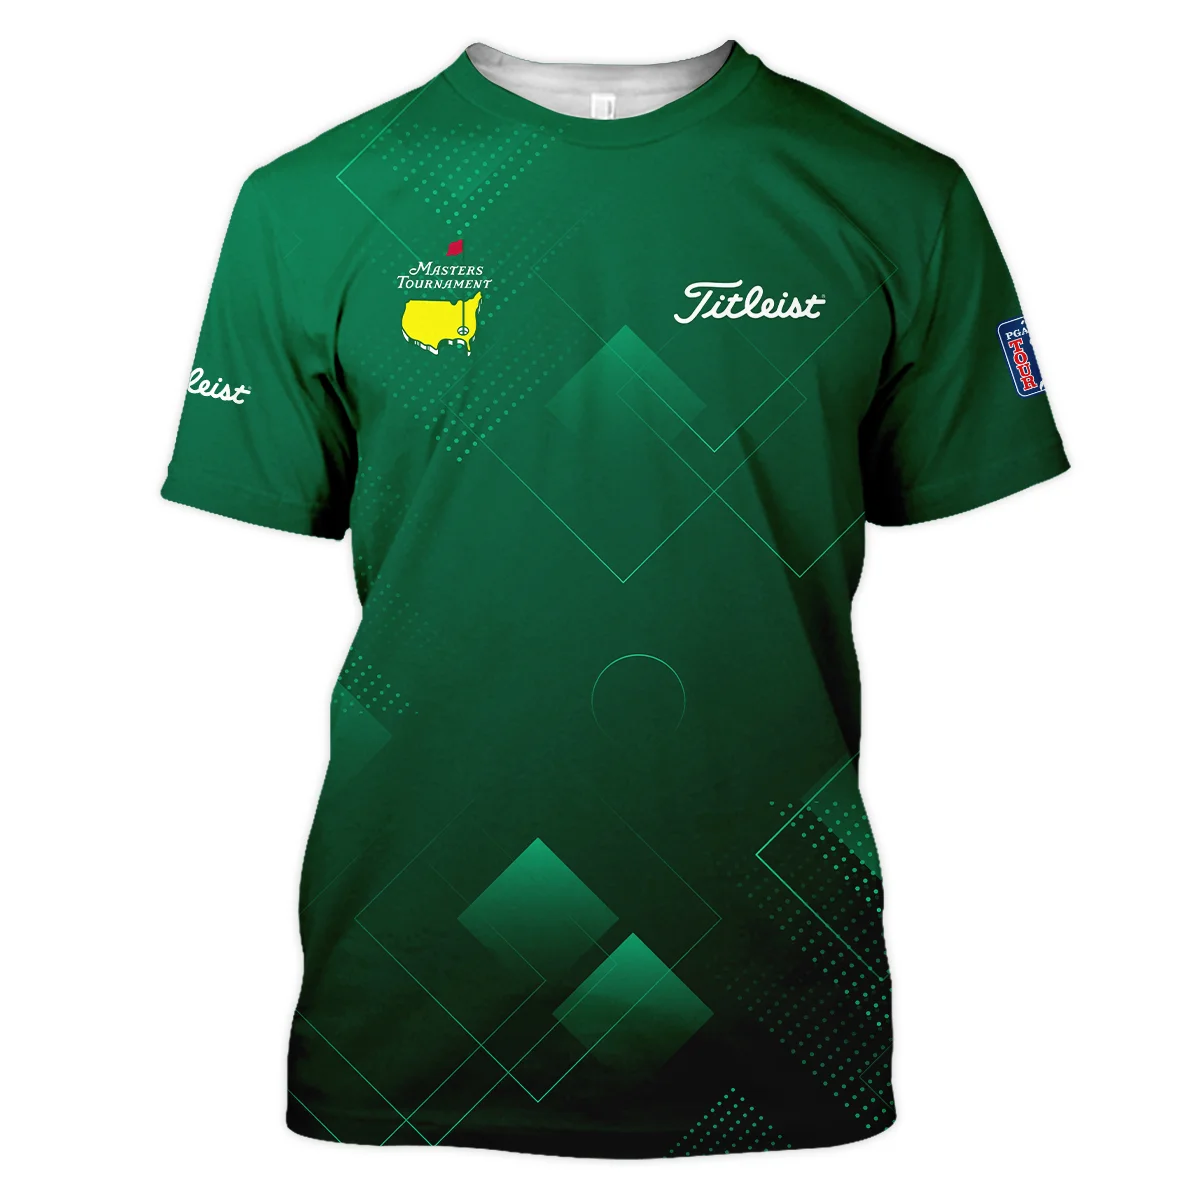 Masters Tournament Titleist Zipper Polo Shirt Golf Sports Green Abstract Geometric Zipper Polo Shirt For Men